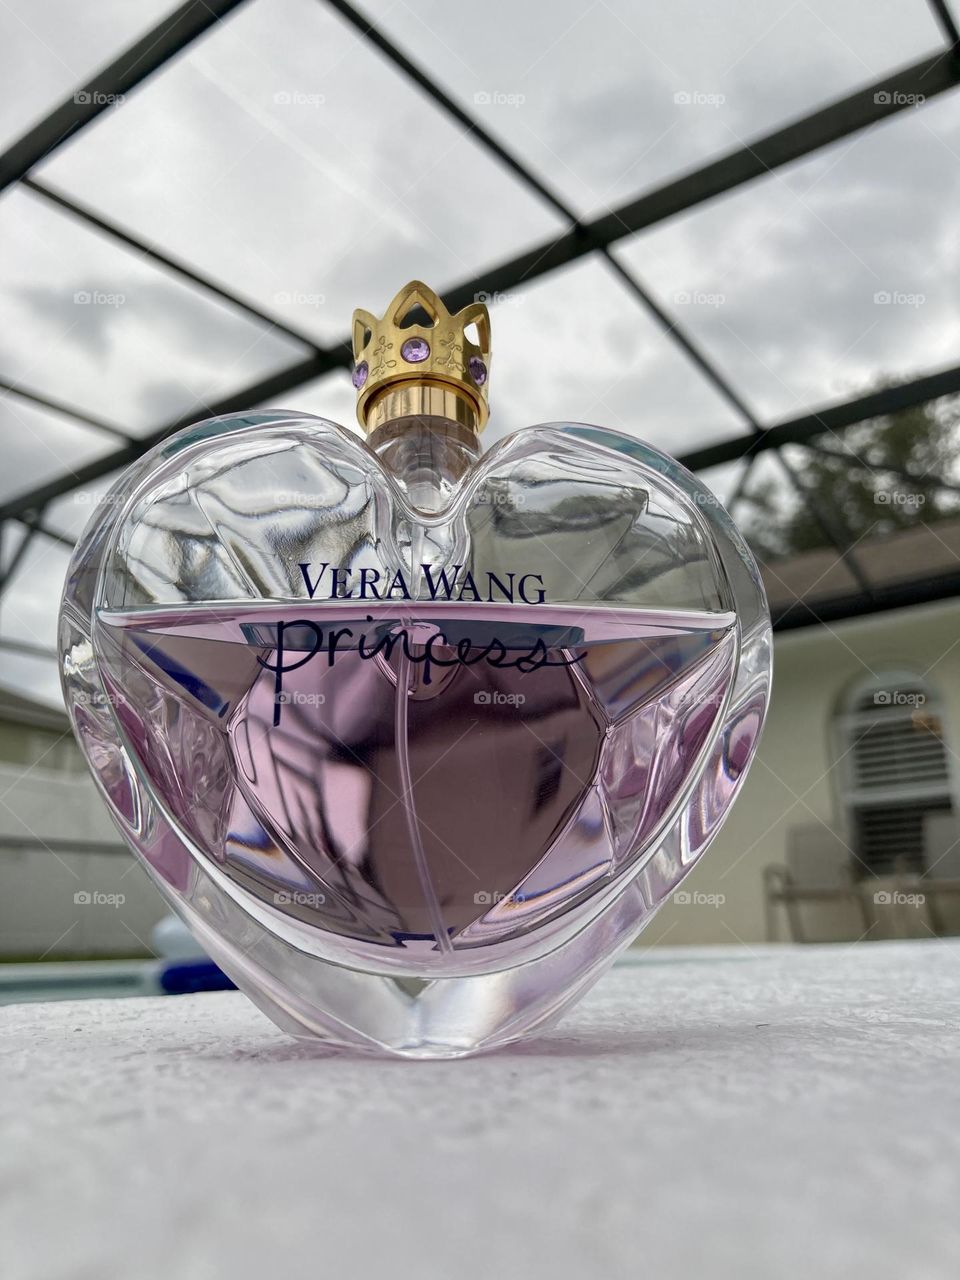 Vera Wang Princess perfume product photography